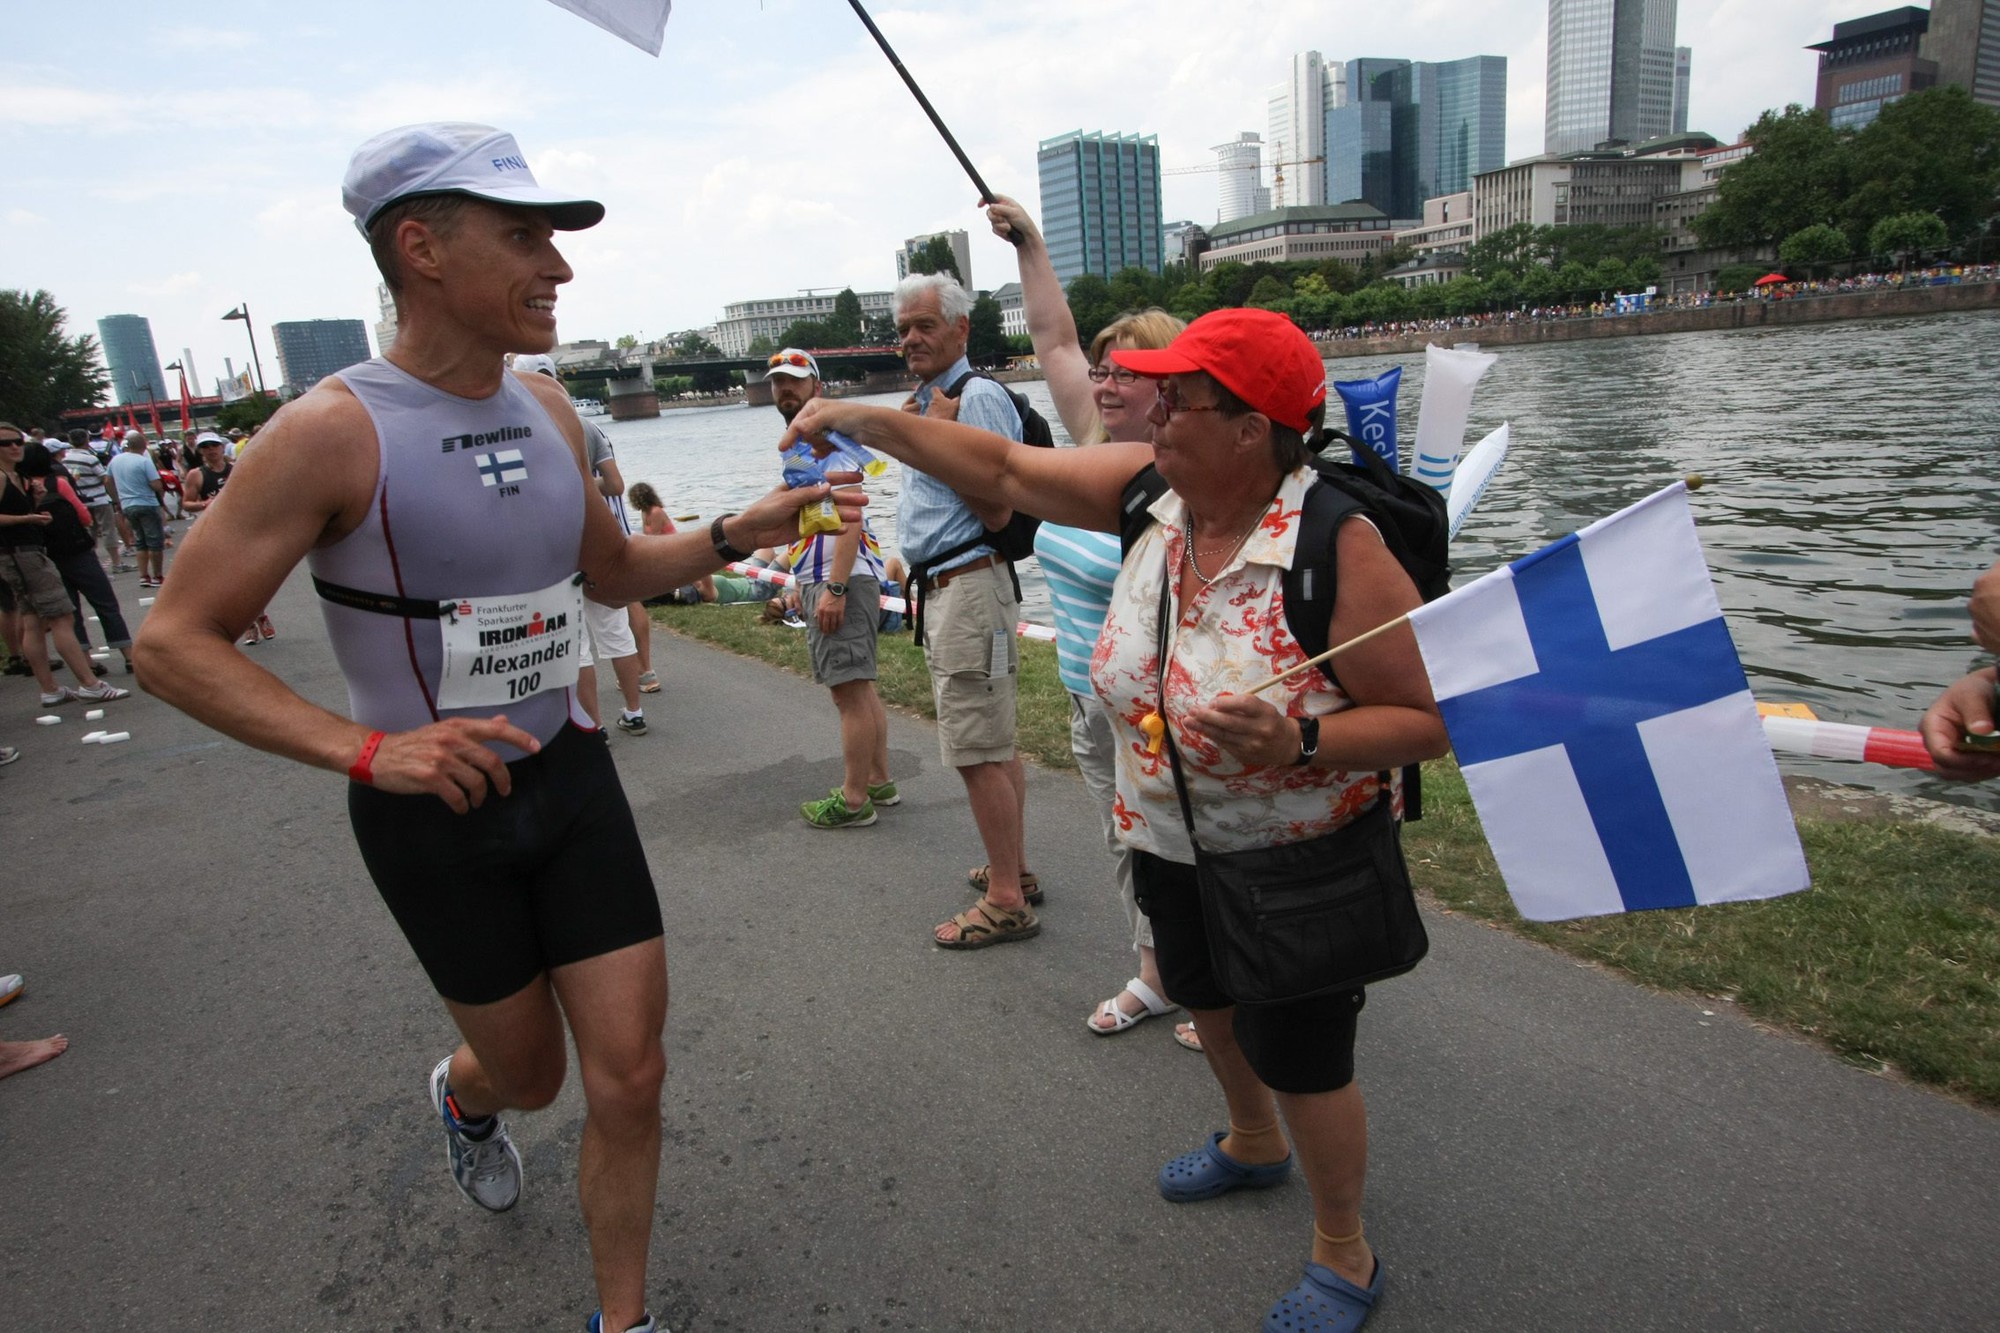 Cựu Thủ tướng Phần Lan Alexander Stubb từng thi đấu nhiều giải Ironman: Frankfurt, 